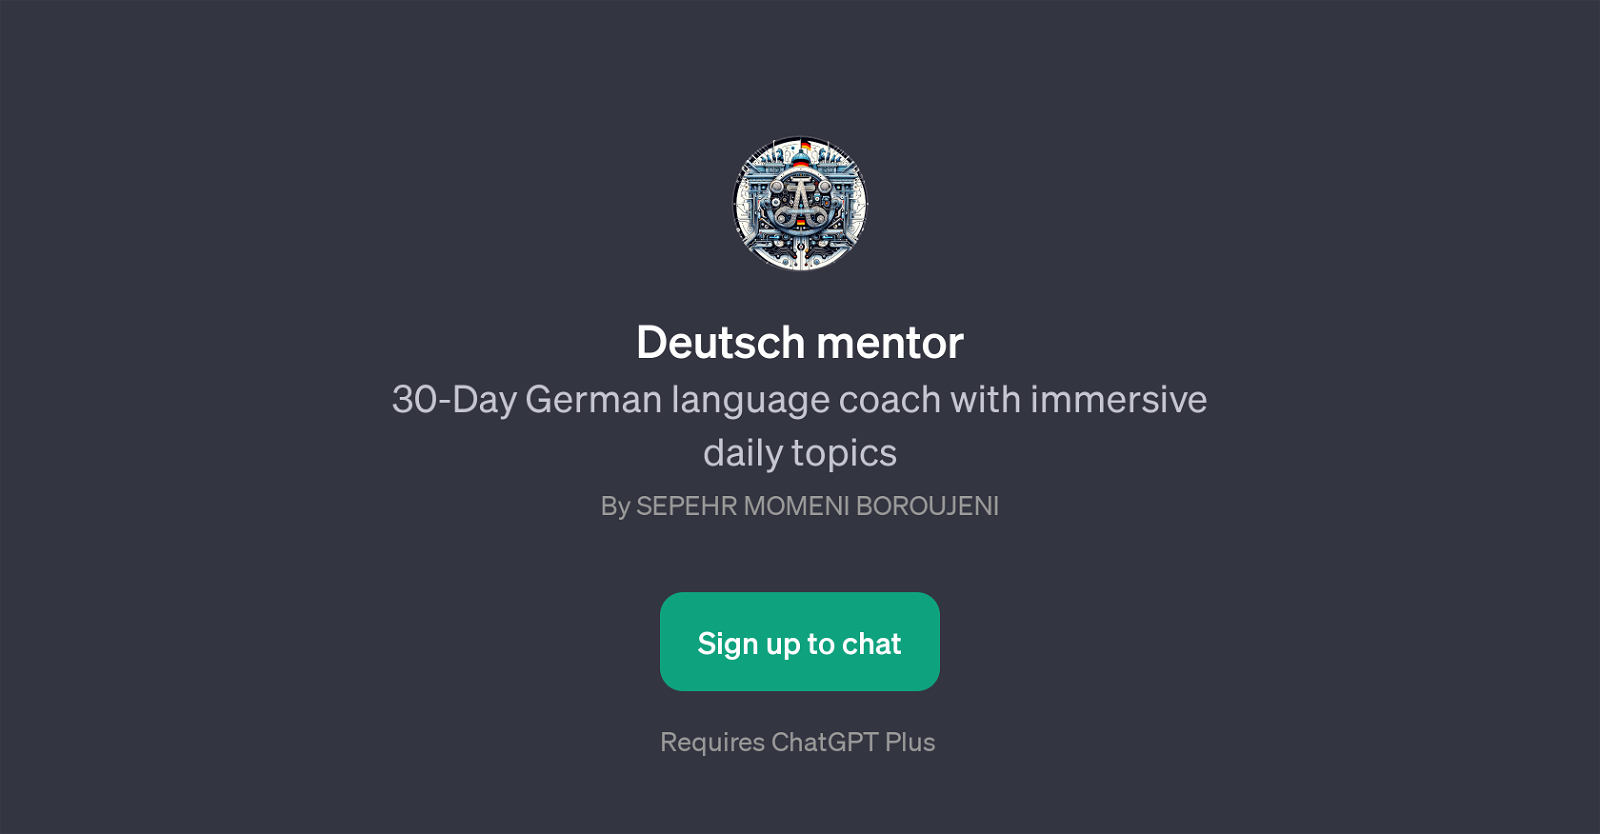 Deutsch mentor website